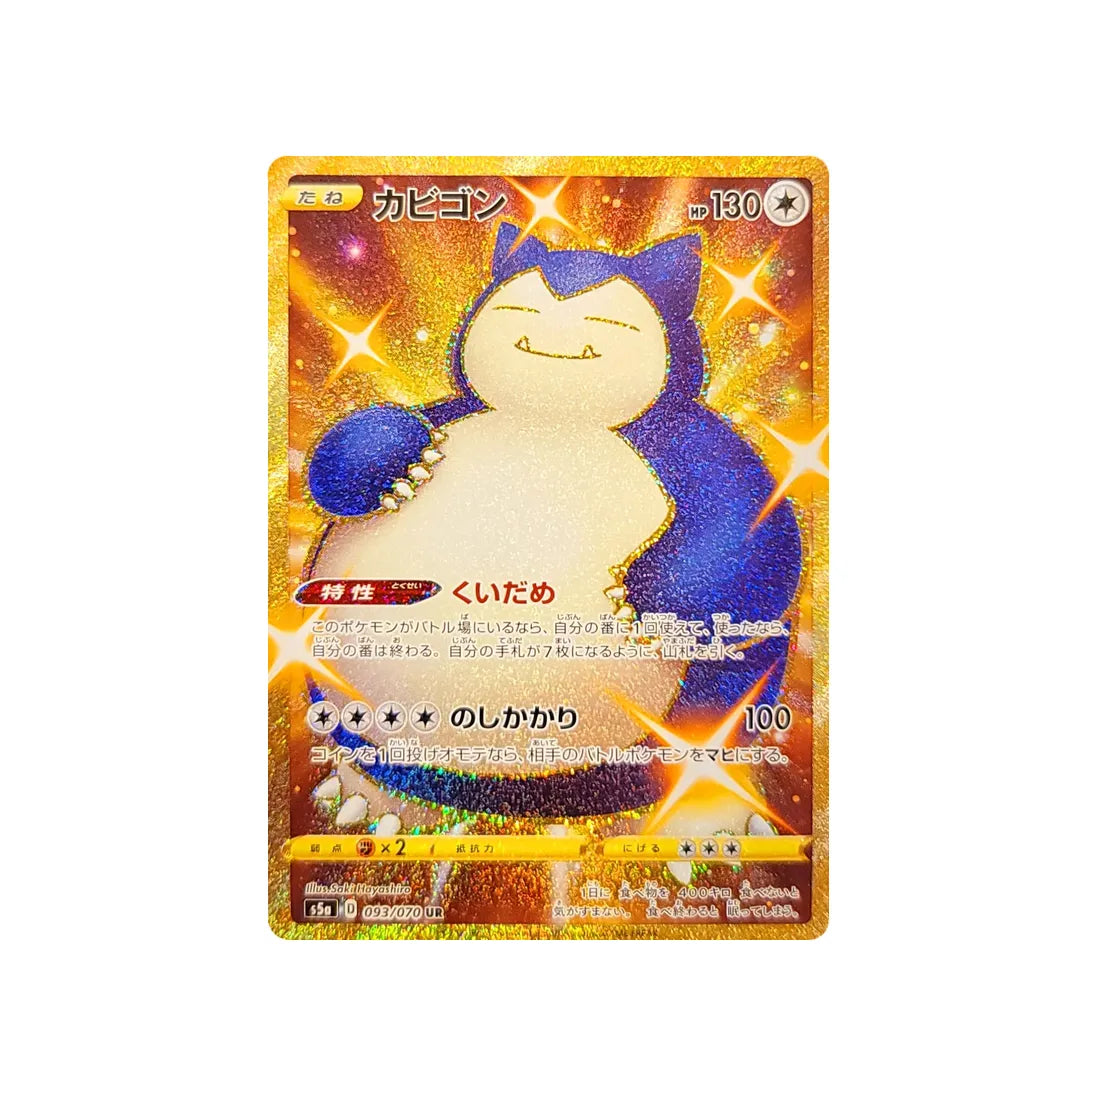 65 Protège carte Pokémon Ronflex